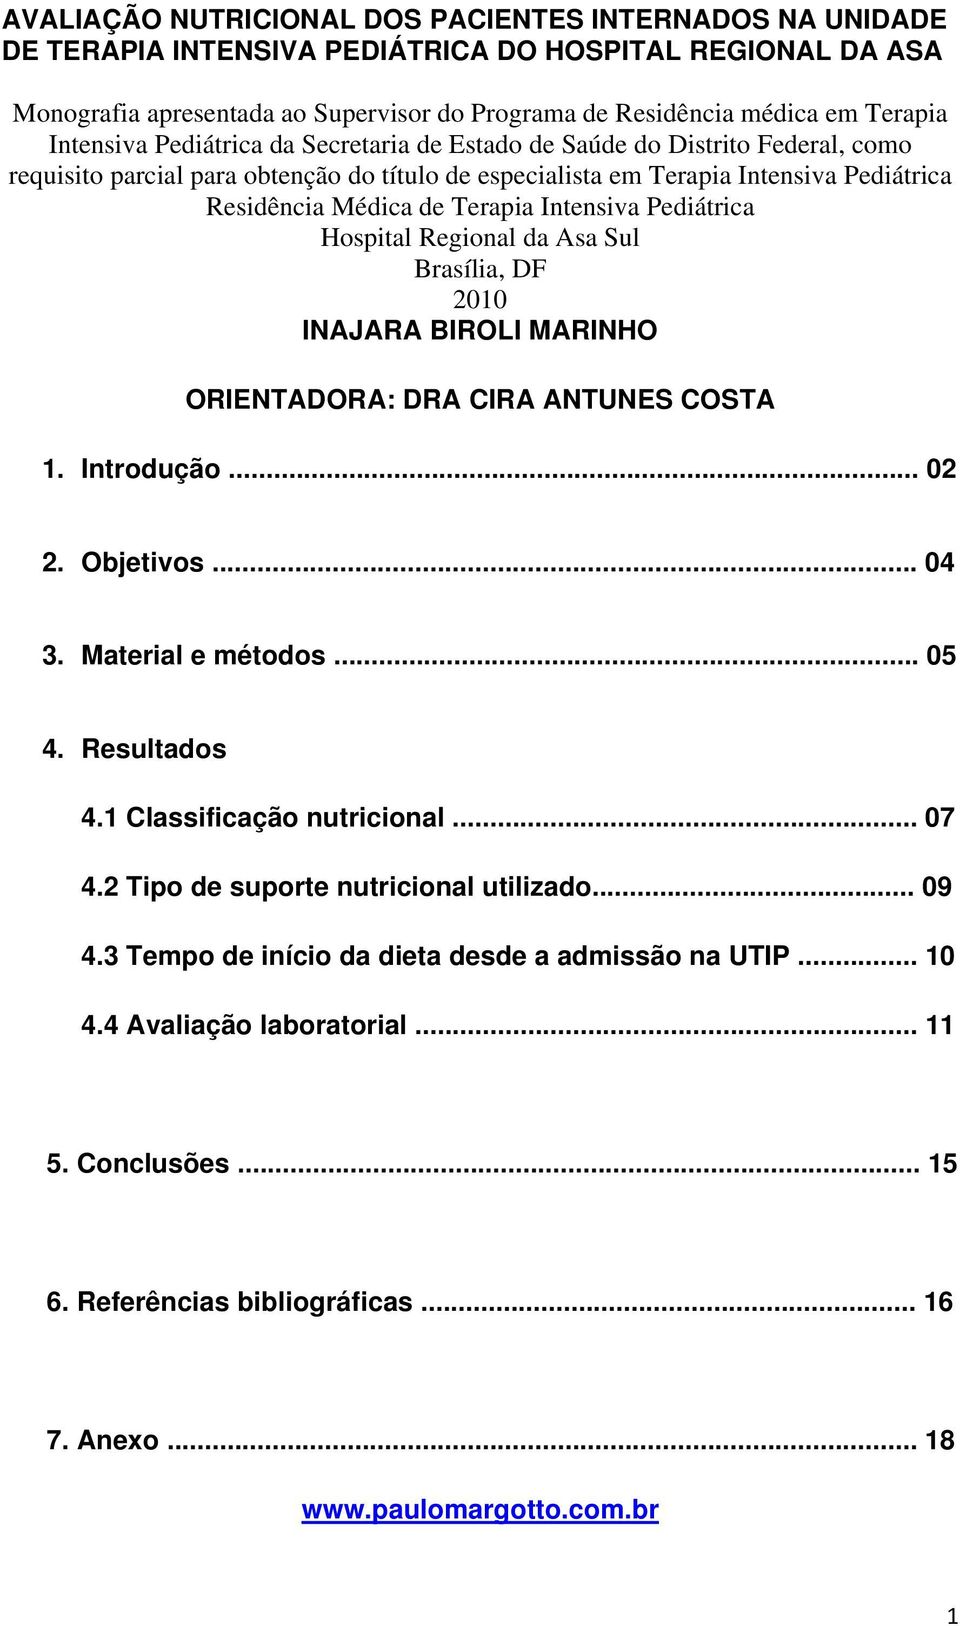 Intensiva Pediátrica Hospital Regional da Asa Sul Brasília, DF 2010 INAJARA BIROLI MARINHO ORIENTADORA: DRA CIRA ANTUNES COSTA 1. Introdução... 02 2. Objetivos... 04 3. Material e métodos... 05 4.